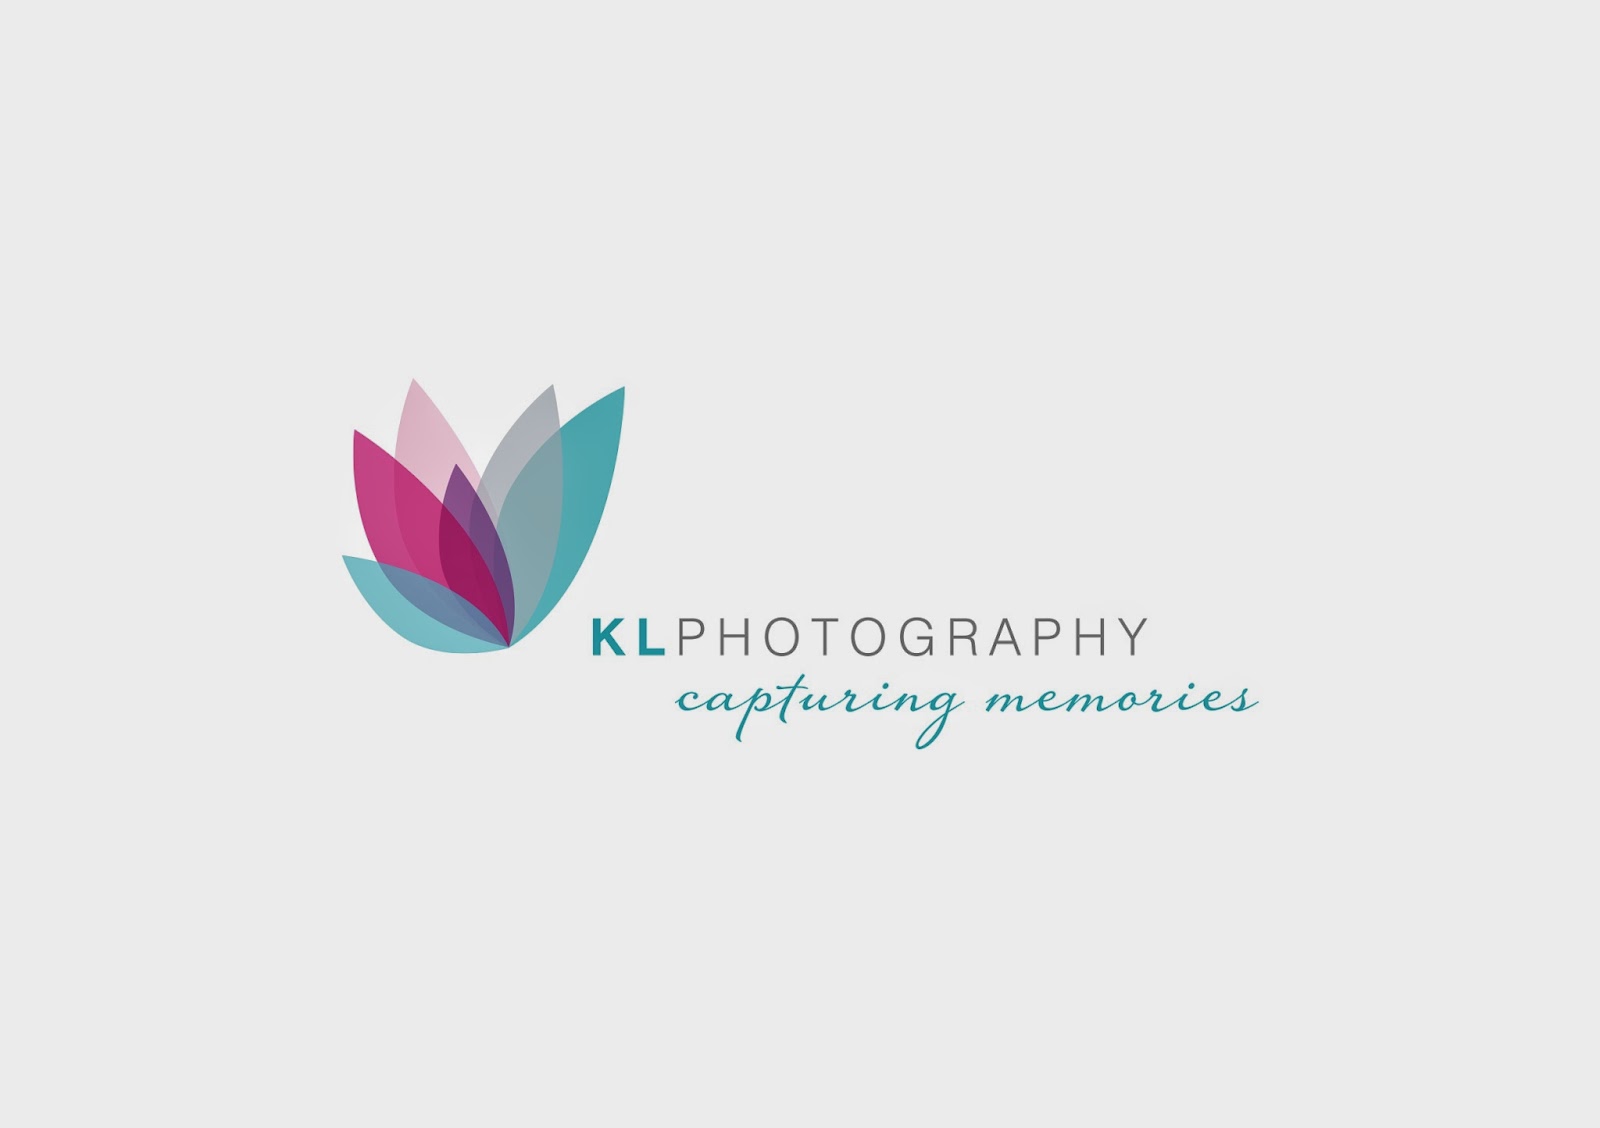 www.klphoto.com.au